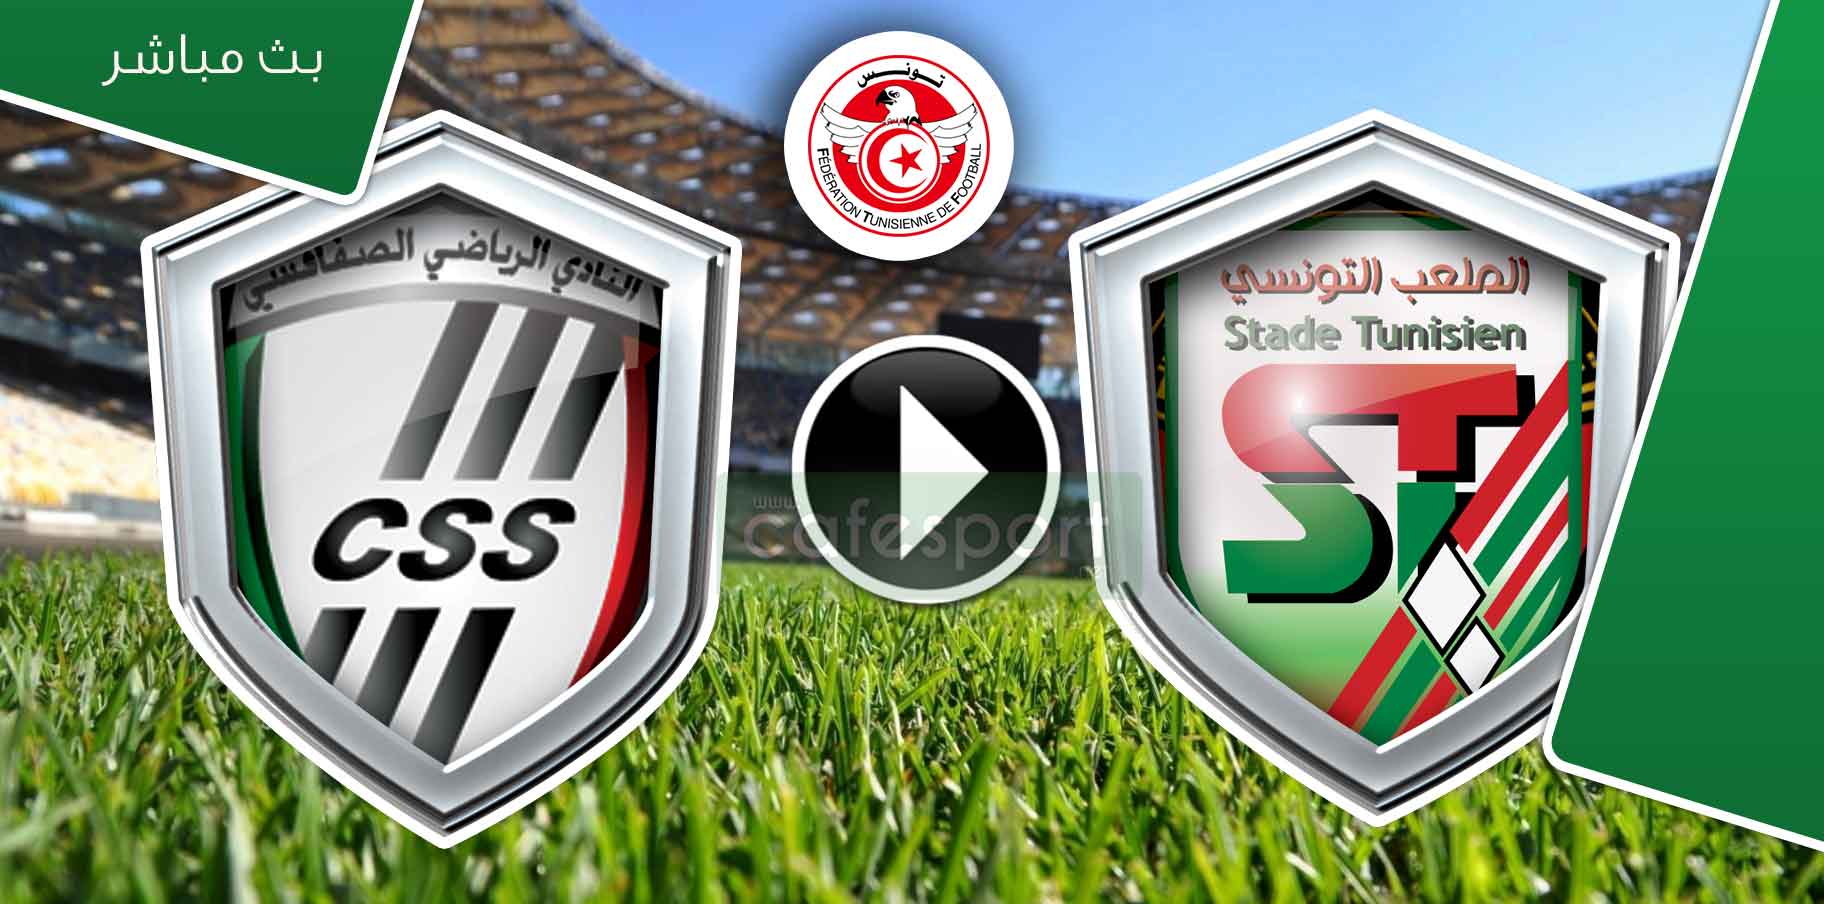 بث مباشر لمباراة الملعب التونسي - النادي الرياضي الصفاقسي